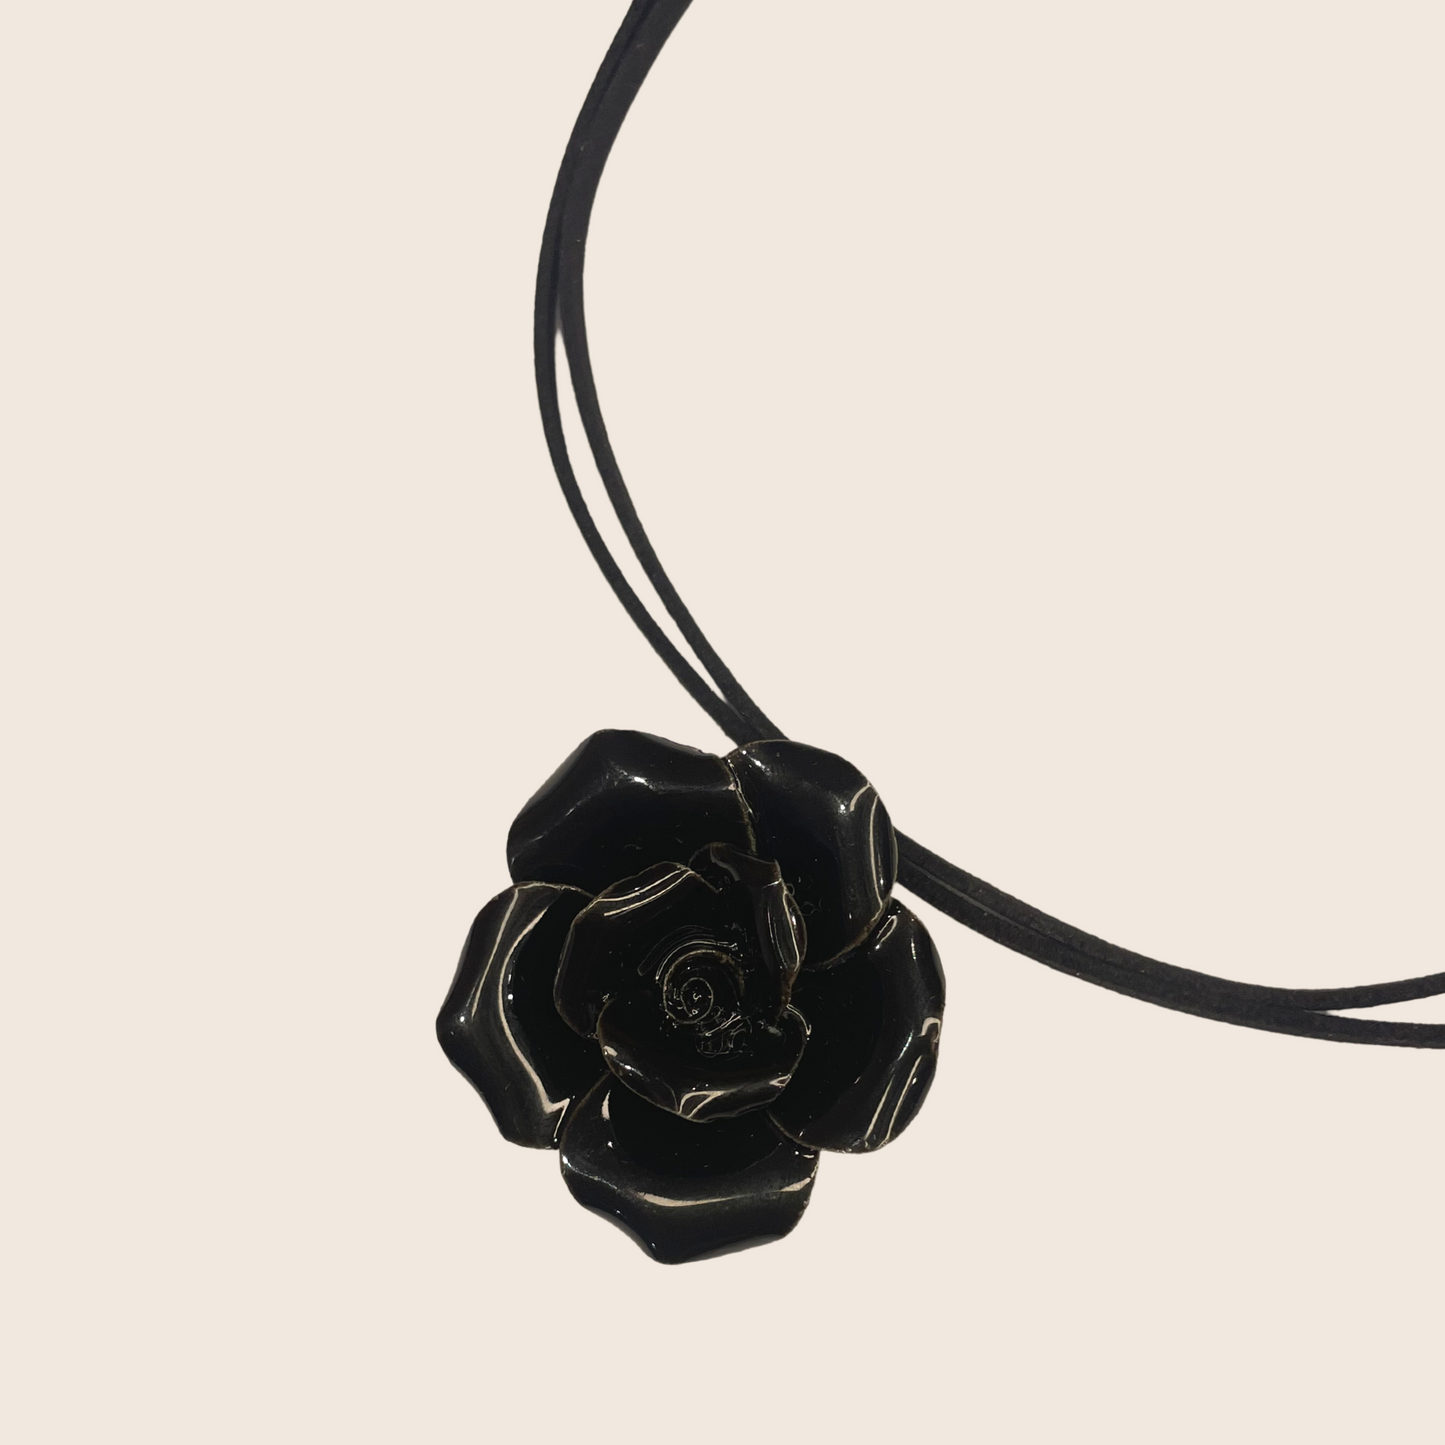 Black Rose Necklace - Lemon Lua Black Rose Necklace Lemon Lua Lemon Lua Black Rose Necklace Black Rose Necklace